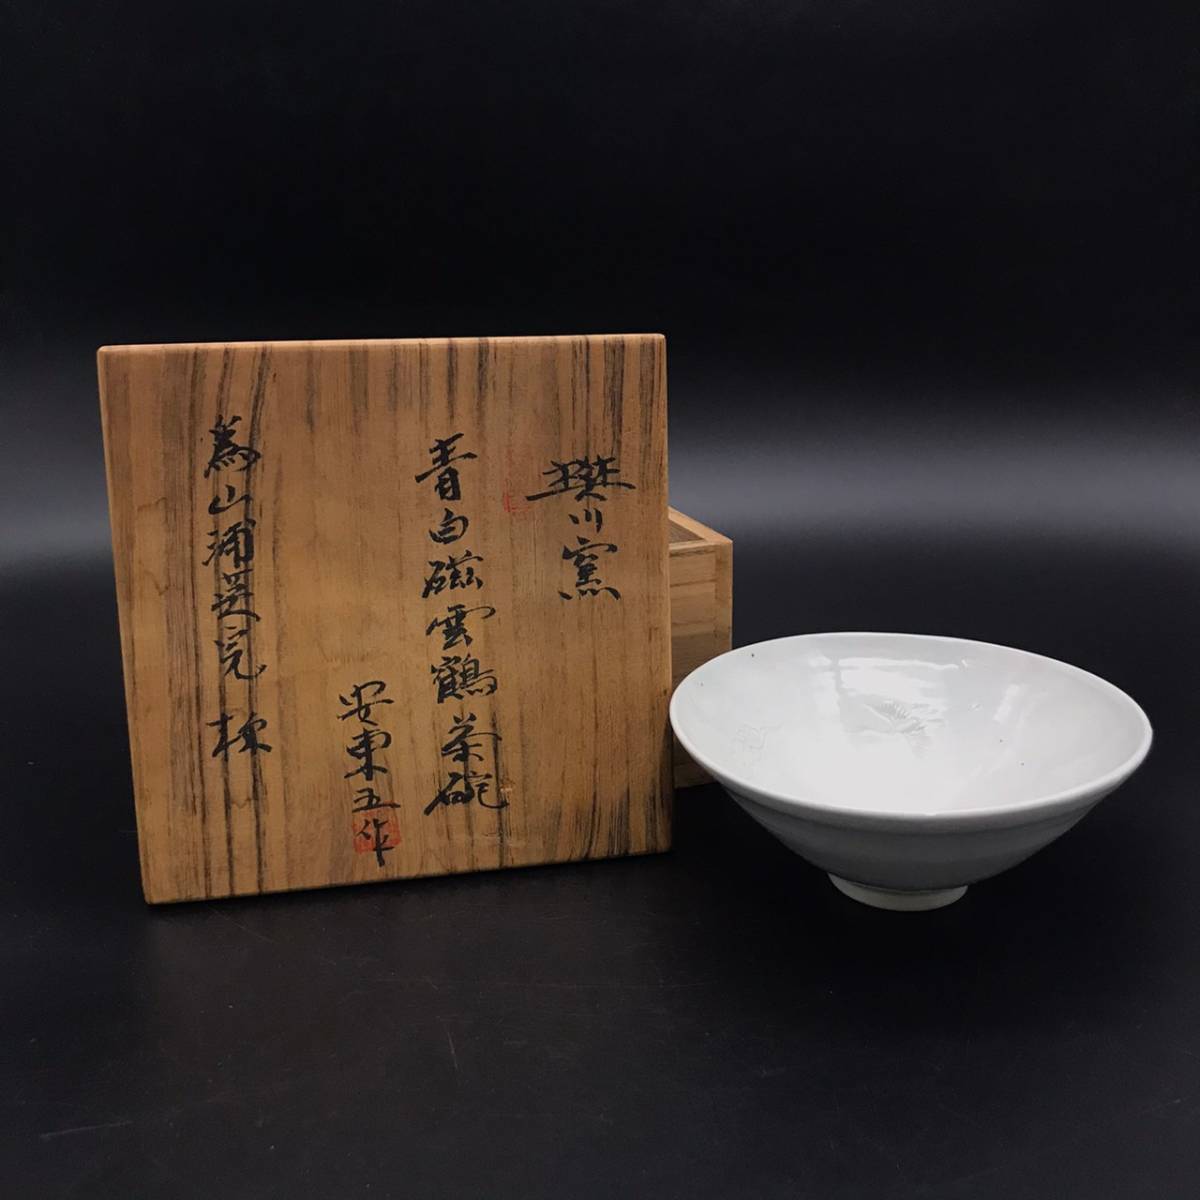 魅力的な 安東五作 茶碗 - 陶芸